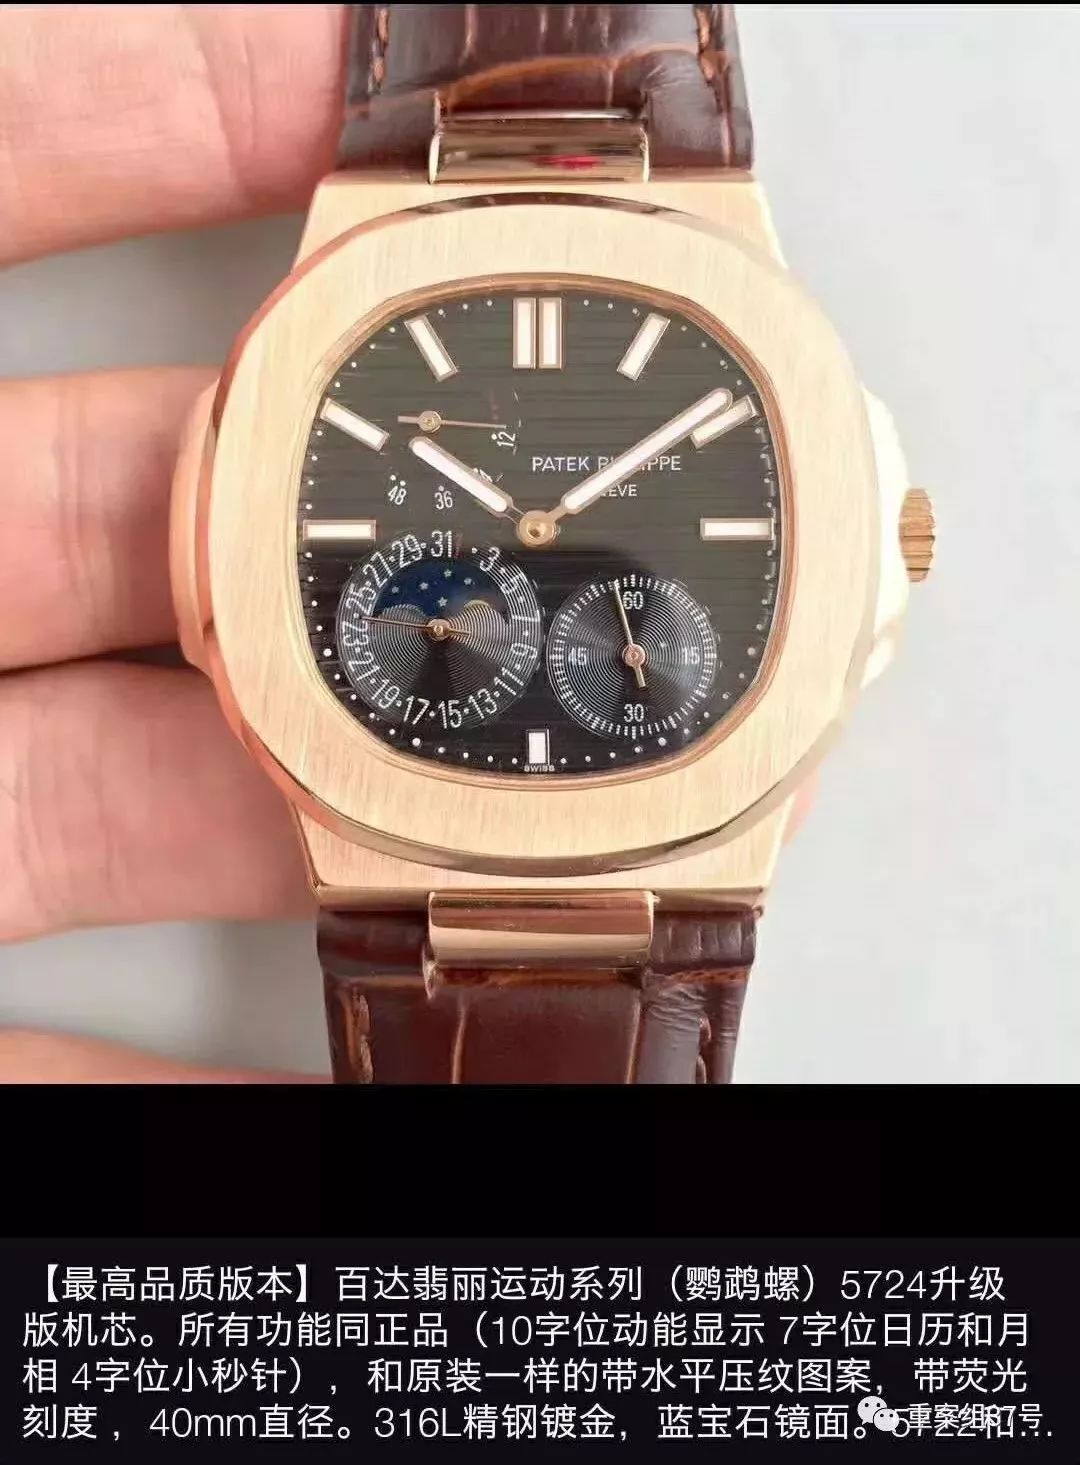 抖音中售卖高端表的用户,价值30万的手表卖2250元